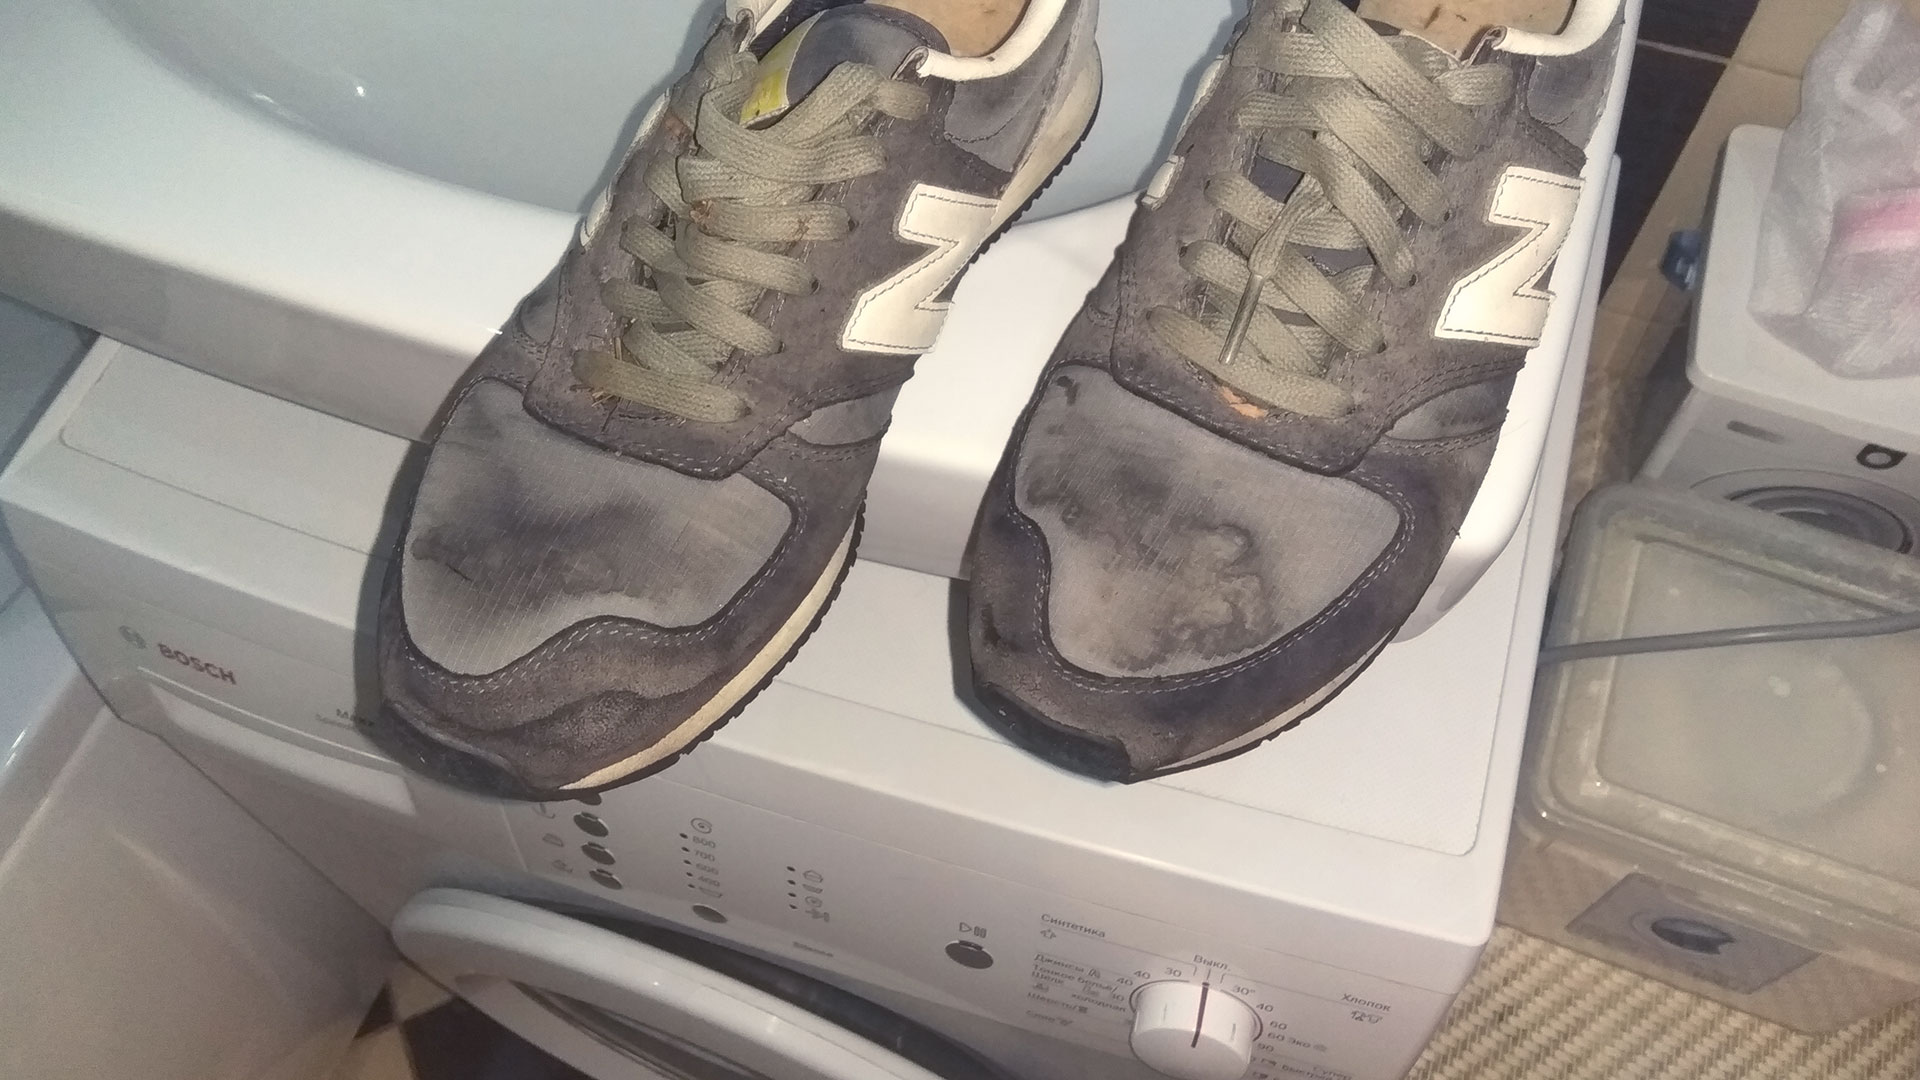 Как правильно стирать кроссовки и кеды в стиральной машине?